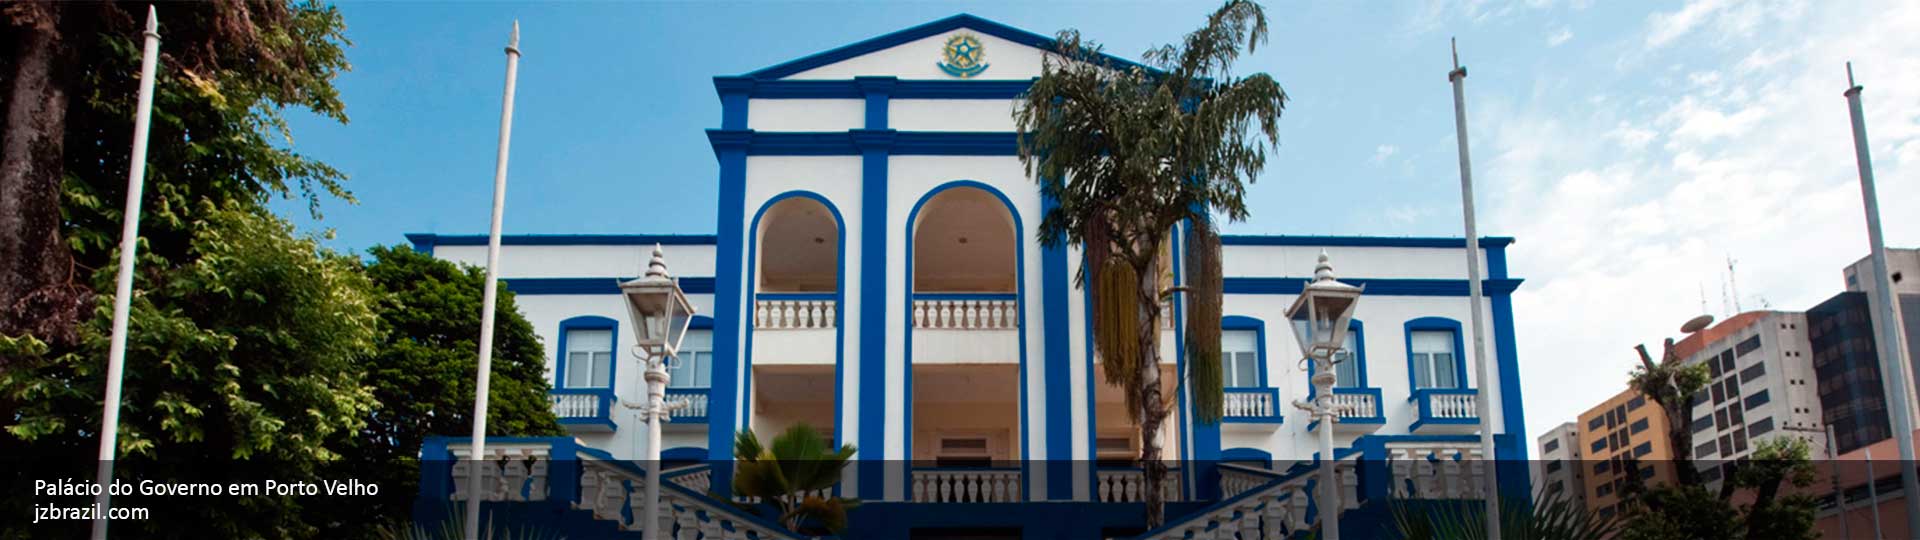 palacio-do-governo-porto-velho-ro